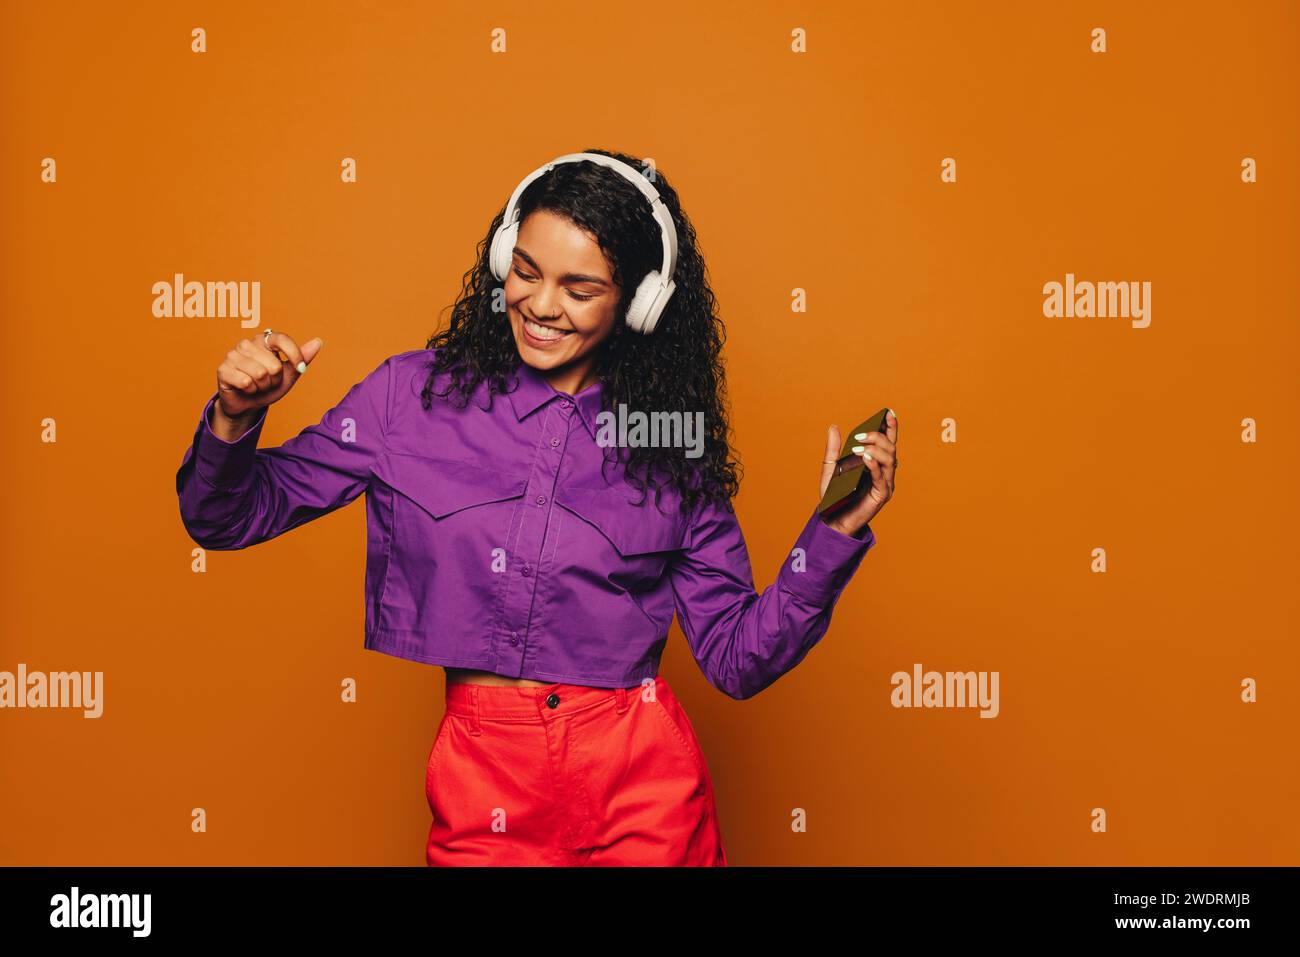 Sur fond orange, une femme en vêtements décontractés tient un téléphone et écoute de la musique avec des écouteurs. Ses cheveux bouclés rebondissent alors qu'elle danse au bea Banque D'Images